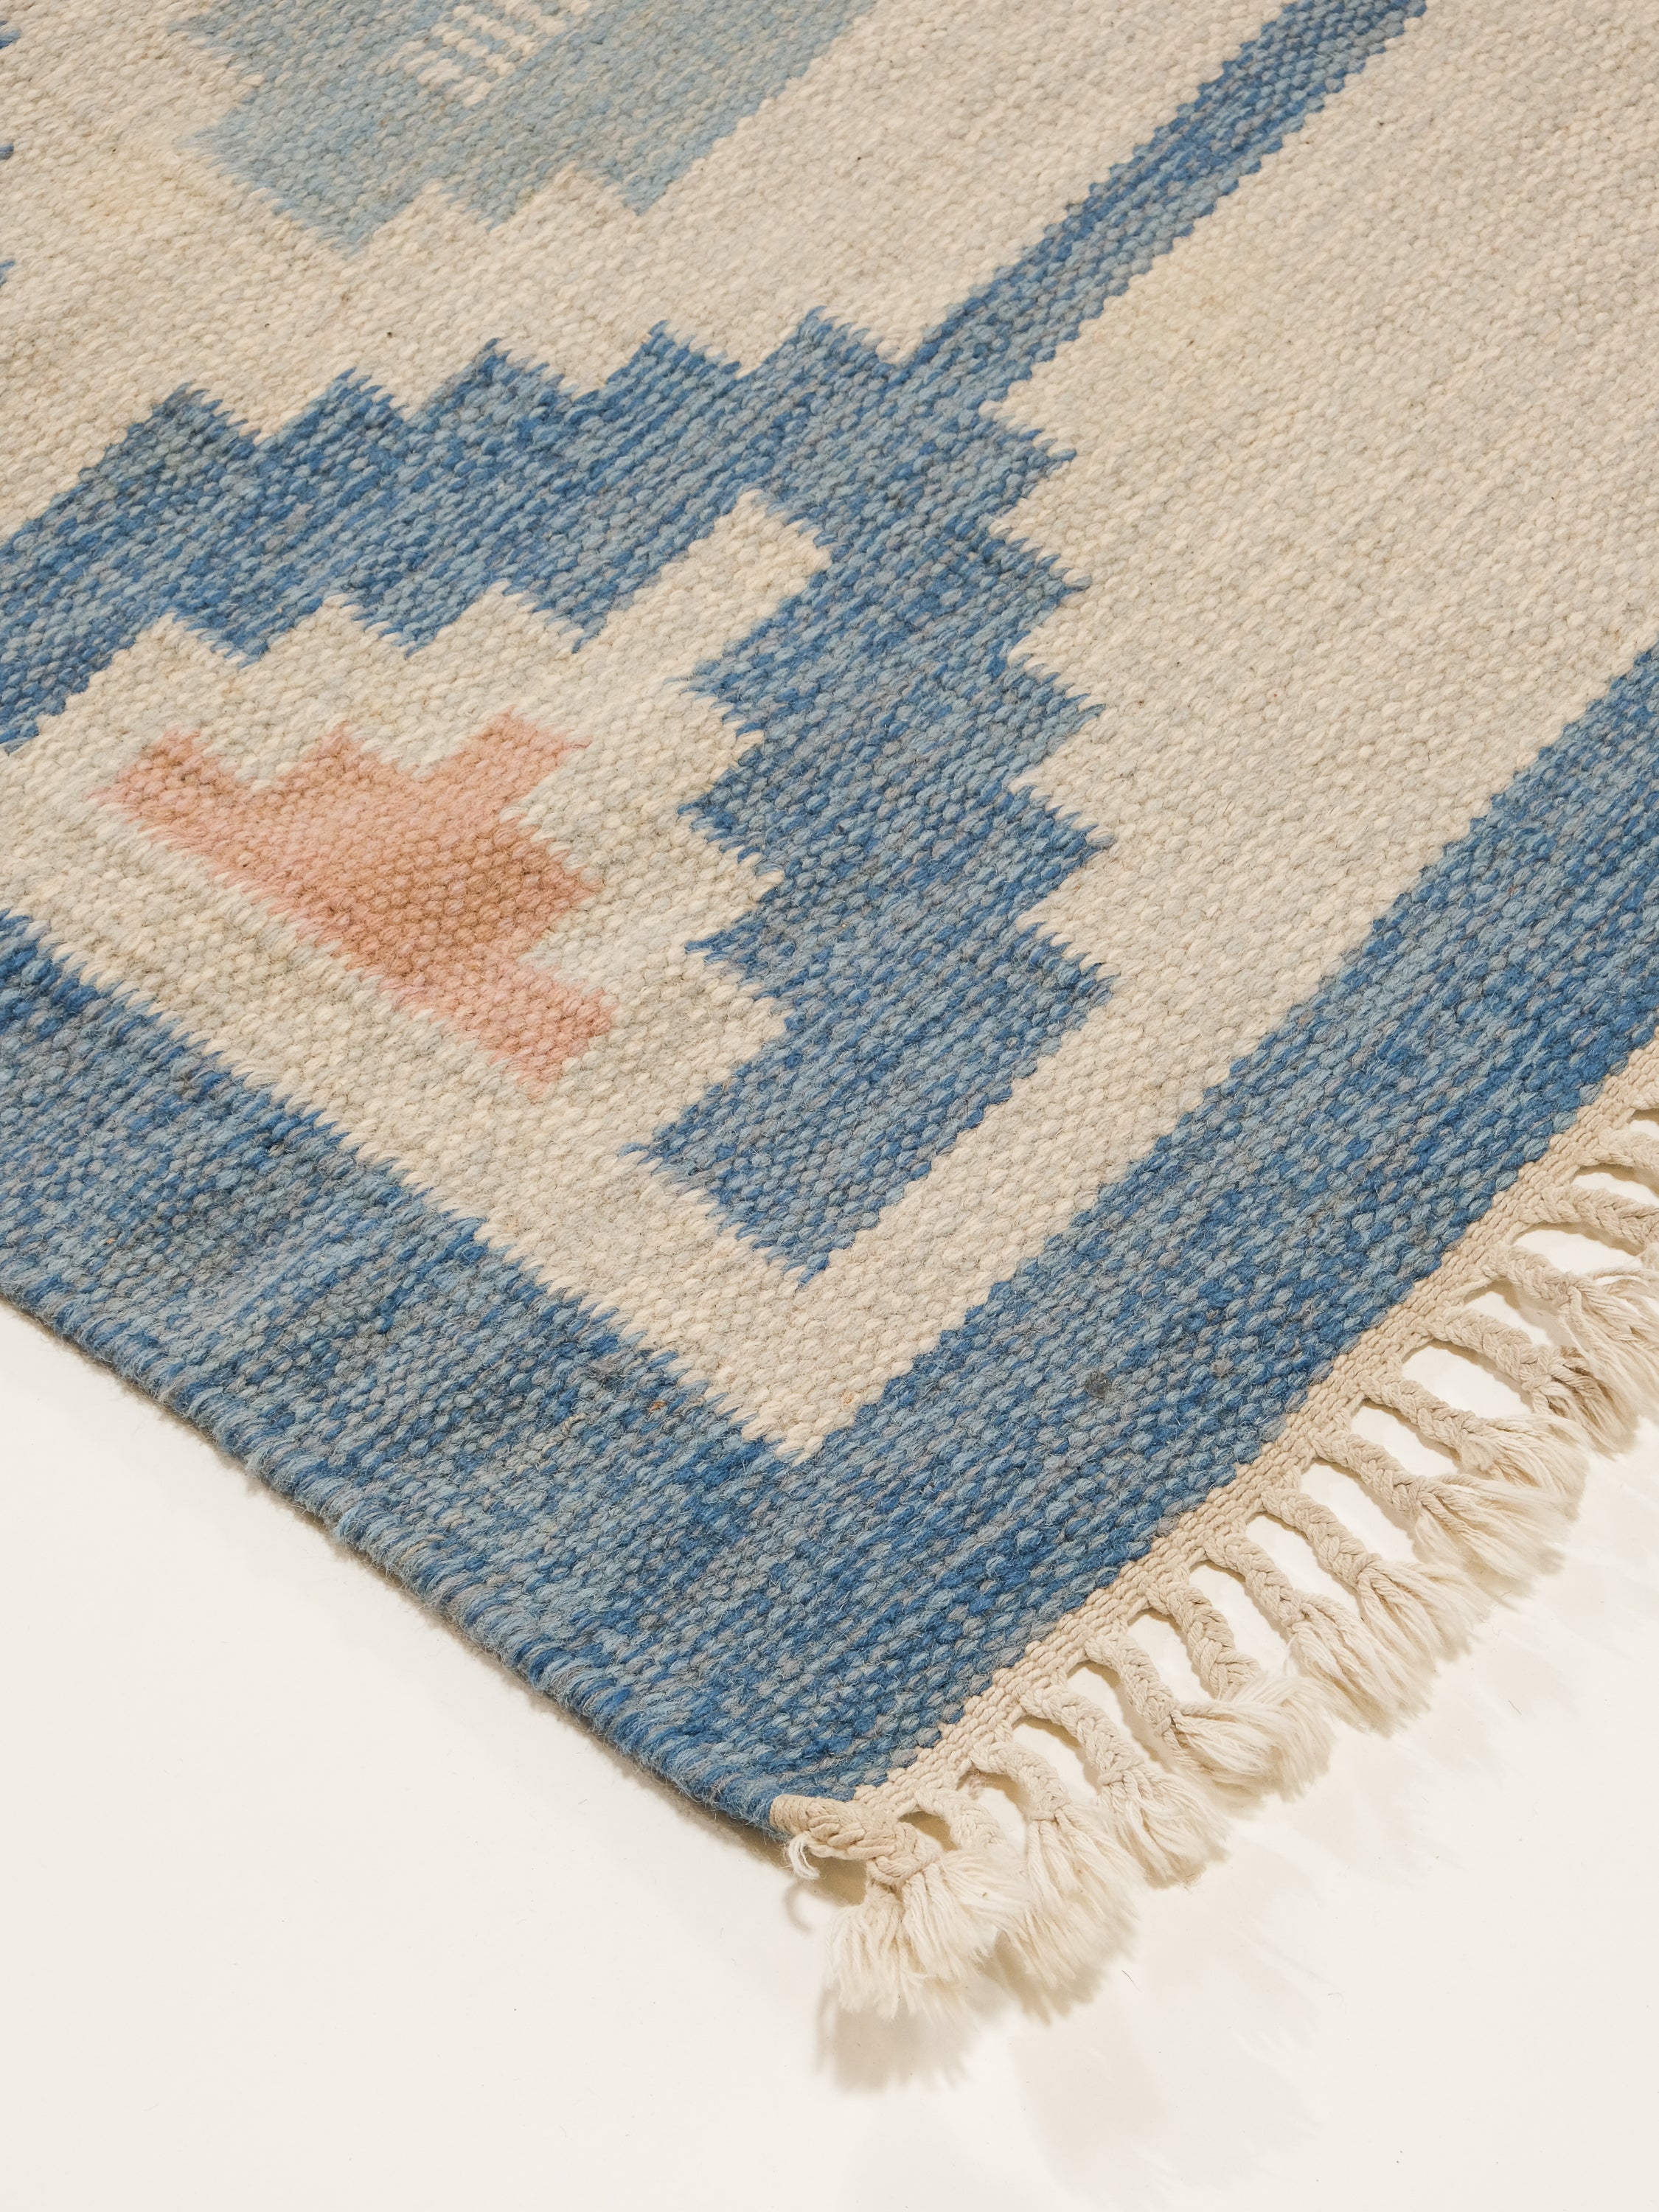 Vintage Swedish Flatweave Wool Rug by Ingegerd Silow